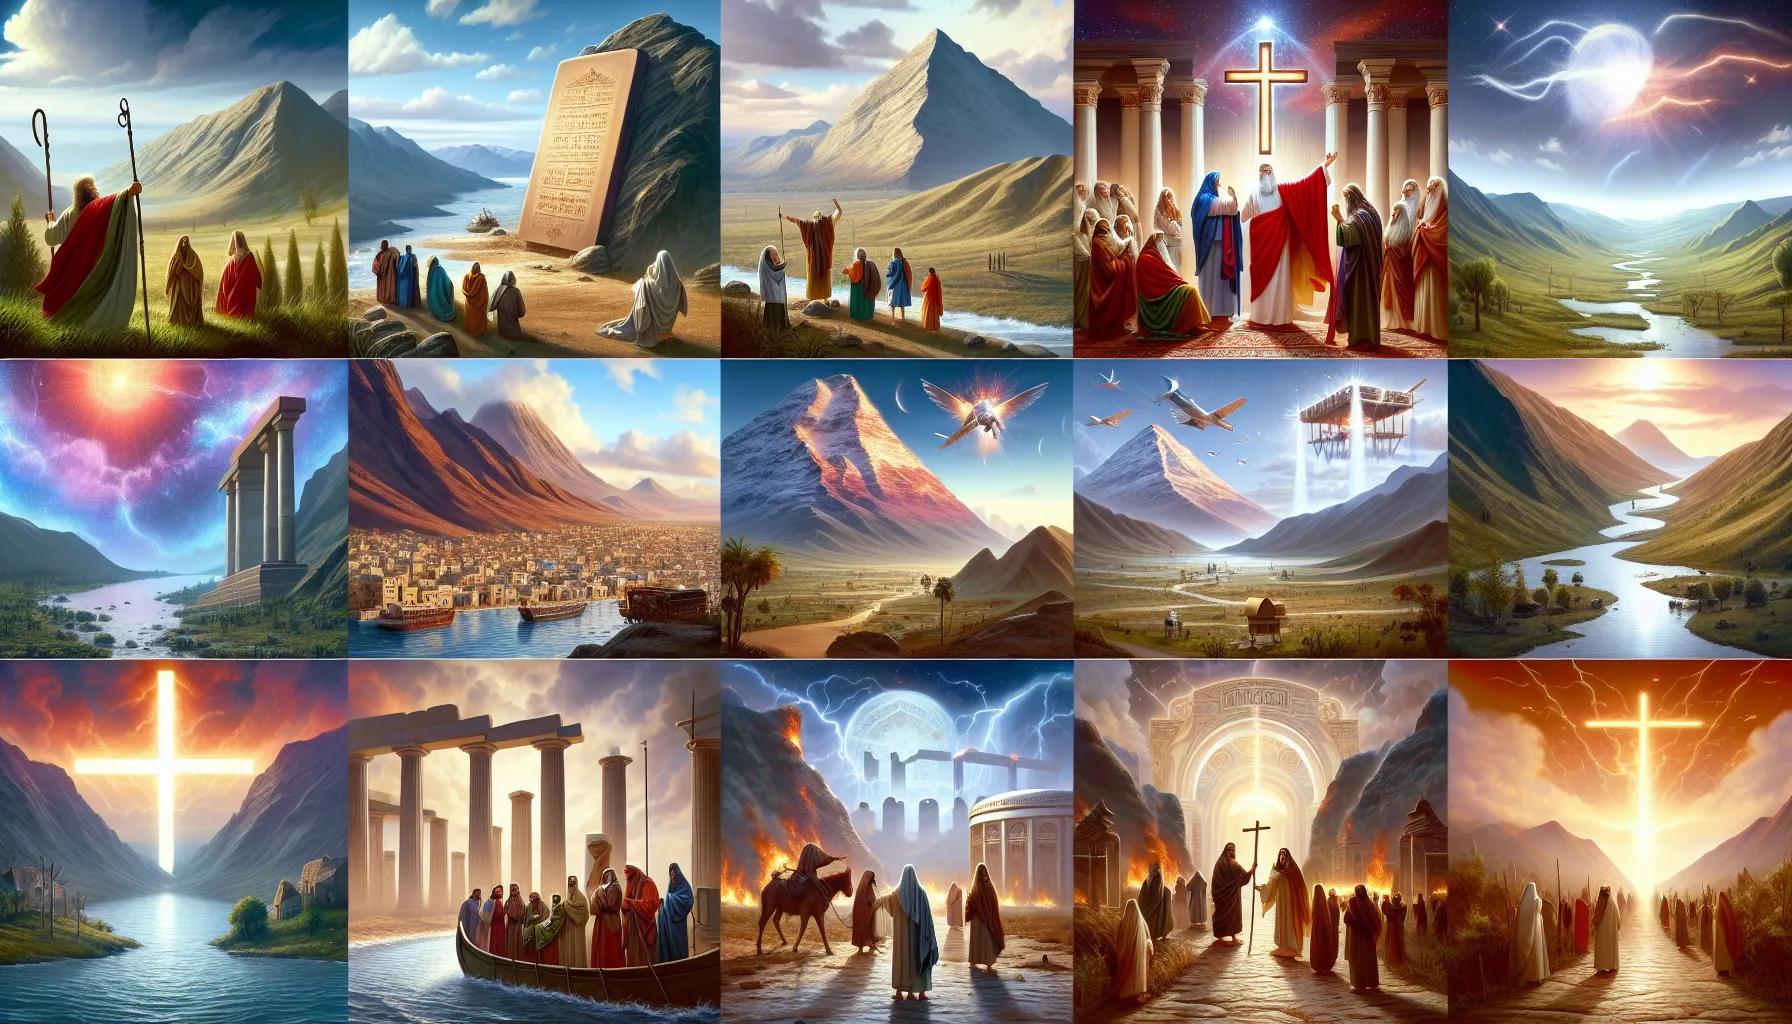 Una imagen que recopila diferentes lugares altos mencionados en la Biblia con sus respectivas descripciones y significados en el contexto bíblico.